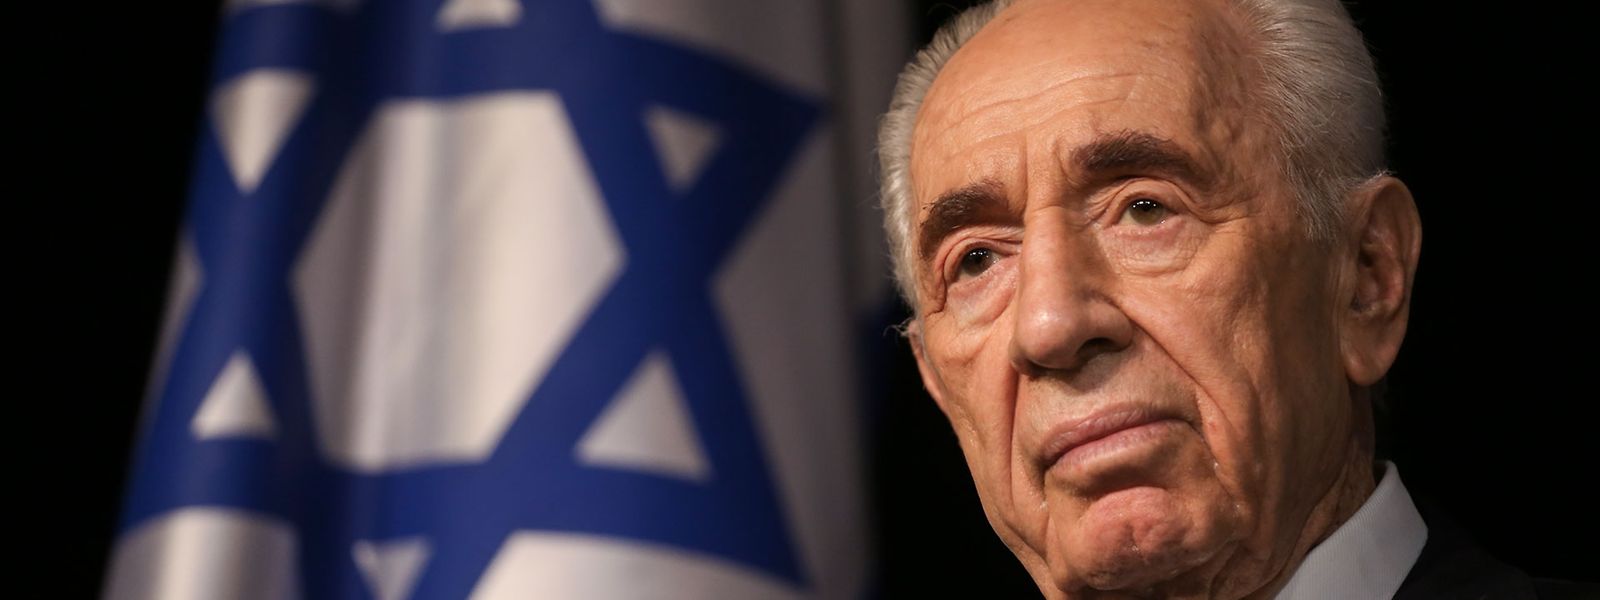 Portrait de Shimon Peres, à l'arrière plan on voit le drapeau d'Israël